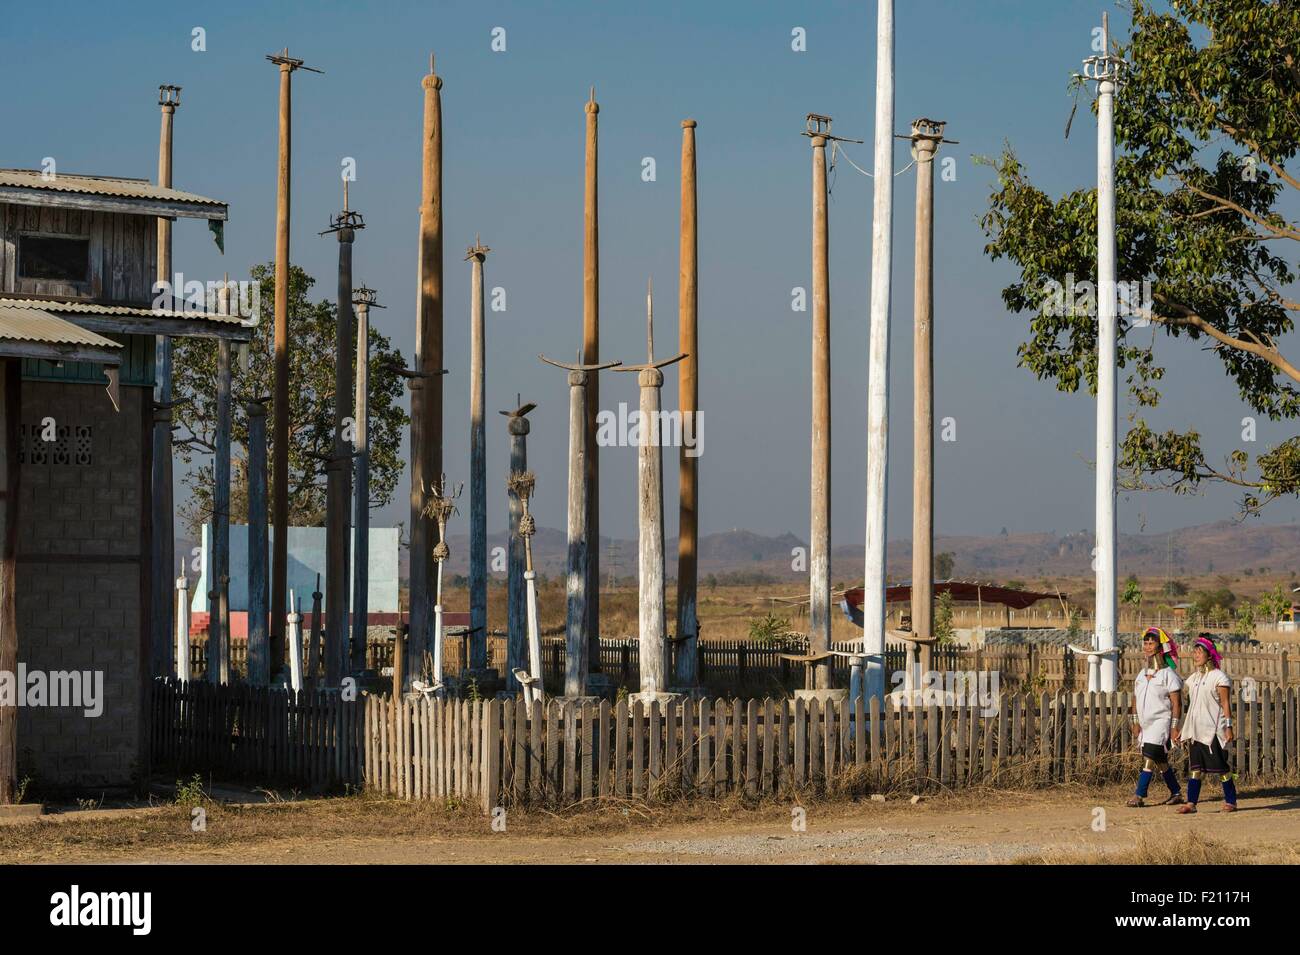 Myanmar (Burma), Kayah state, Kayan tribe (Padaung), Chikae, nats (birman spirit) poles Stock Photo